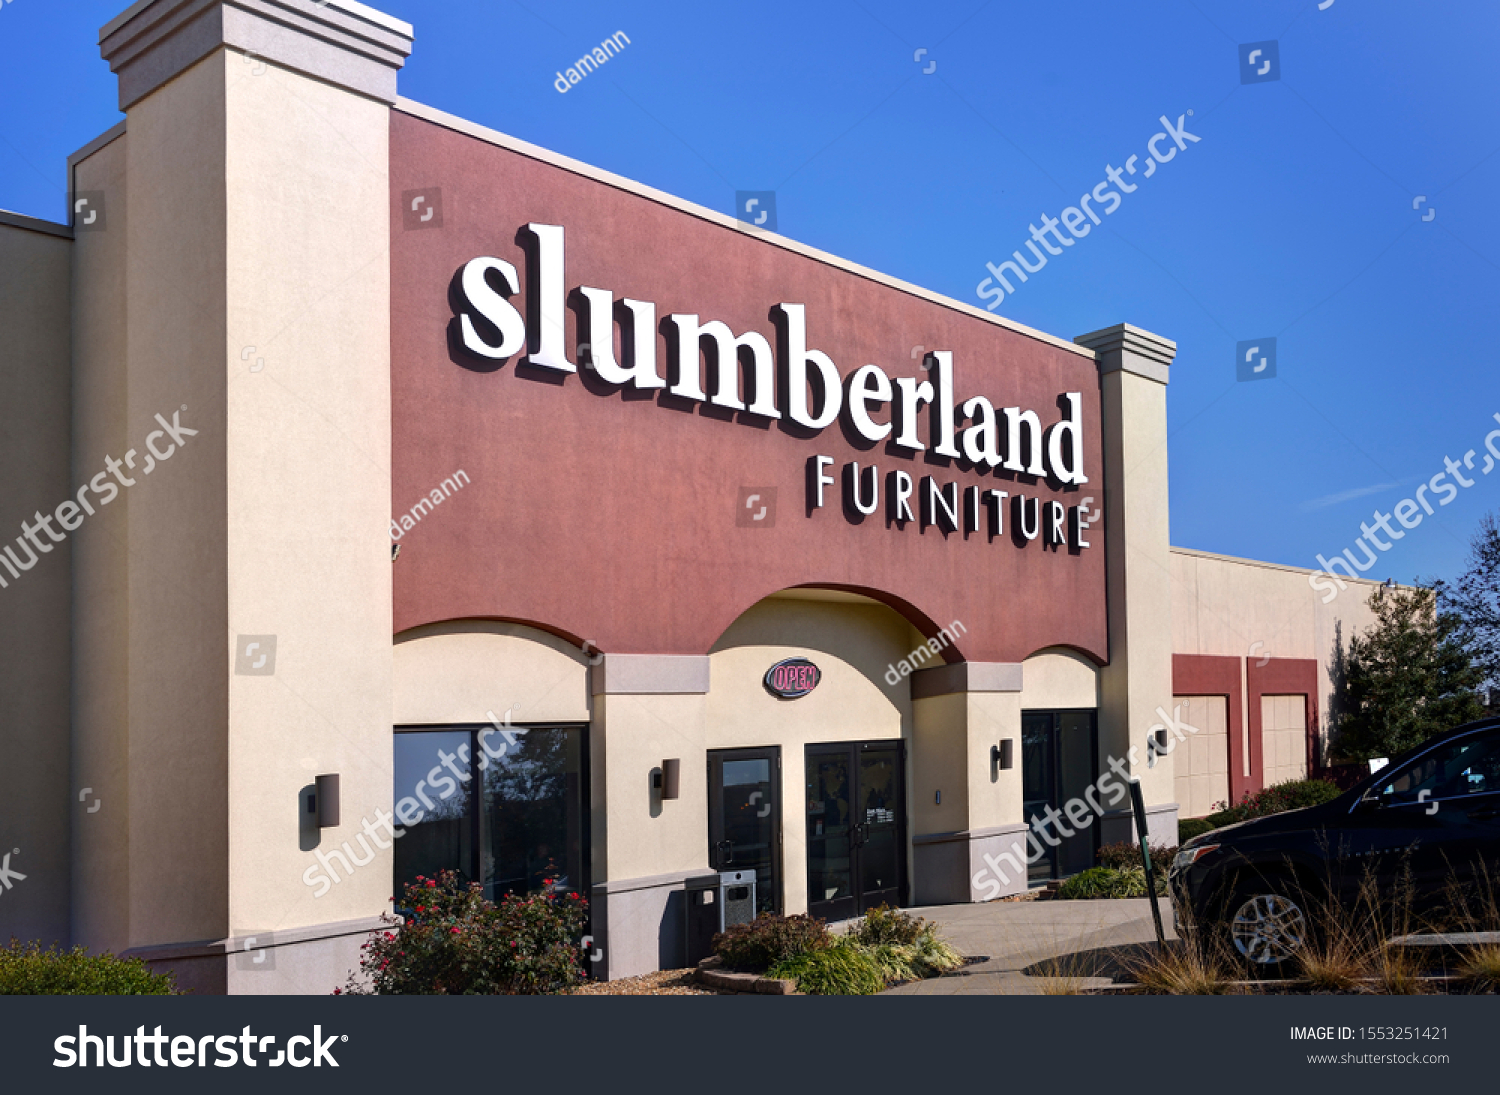 Slumberland Images Stock Photos Vectors Shutterstock